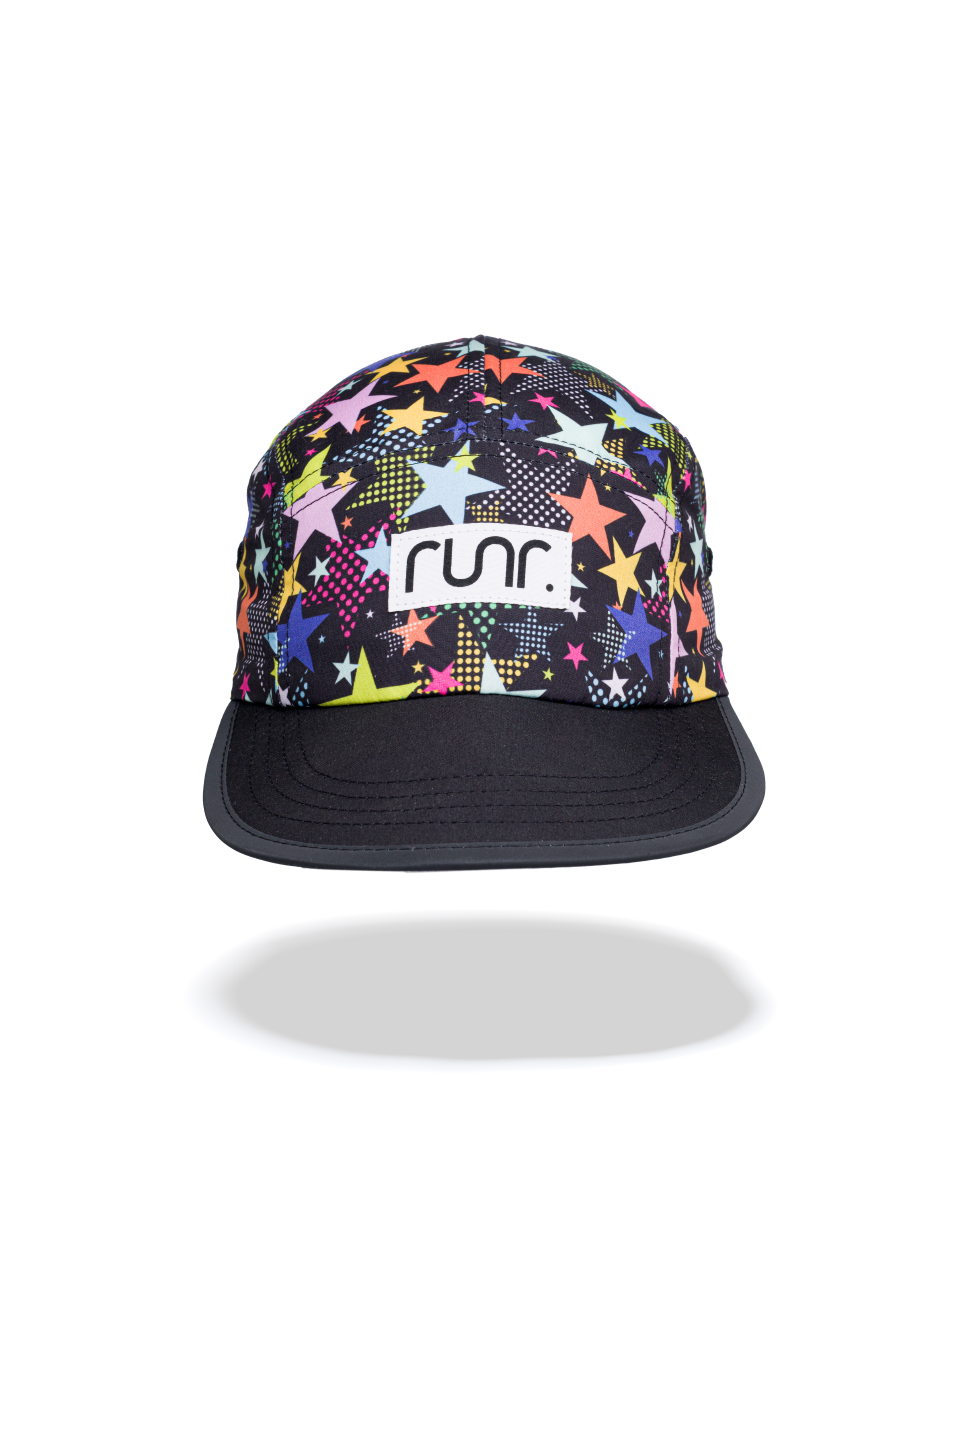 Runr Barcelona Running Hat